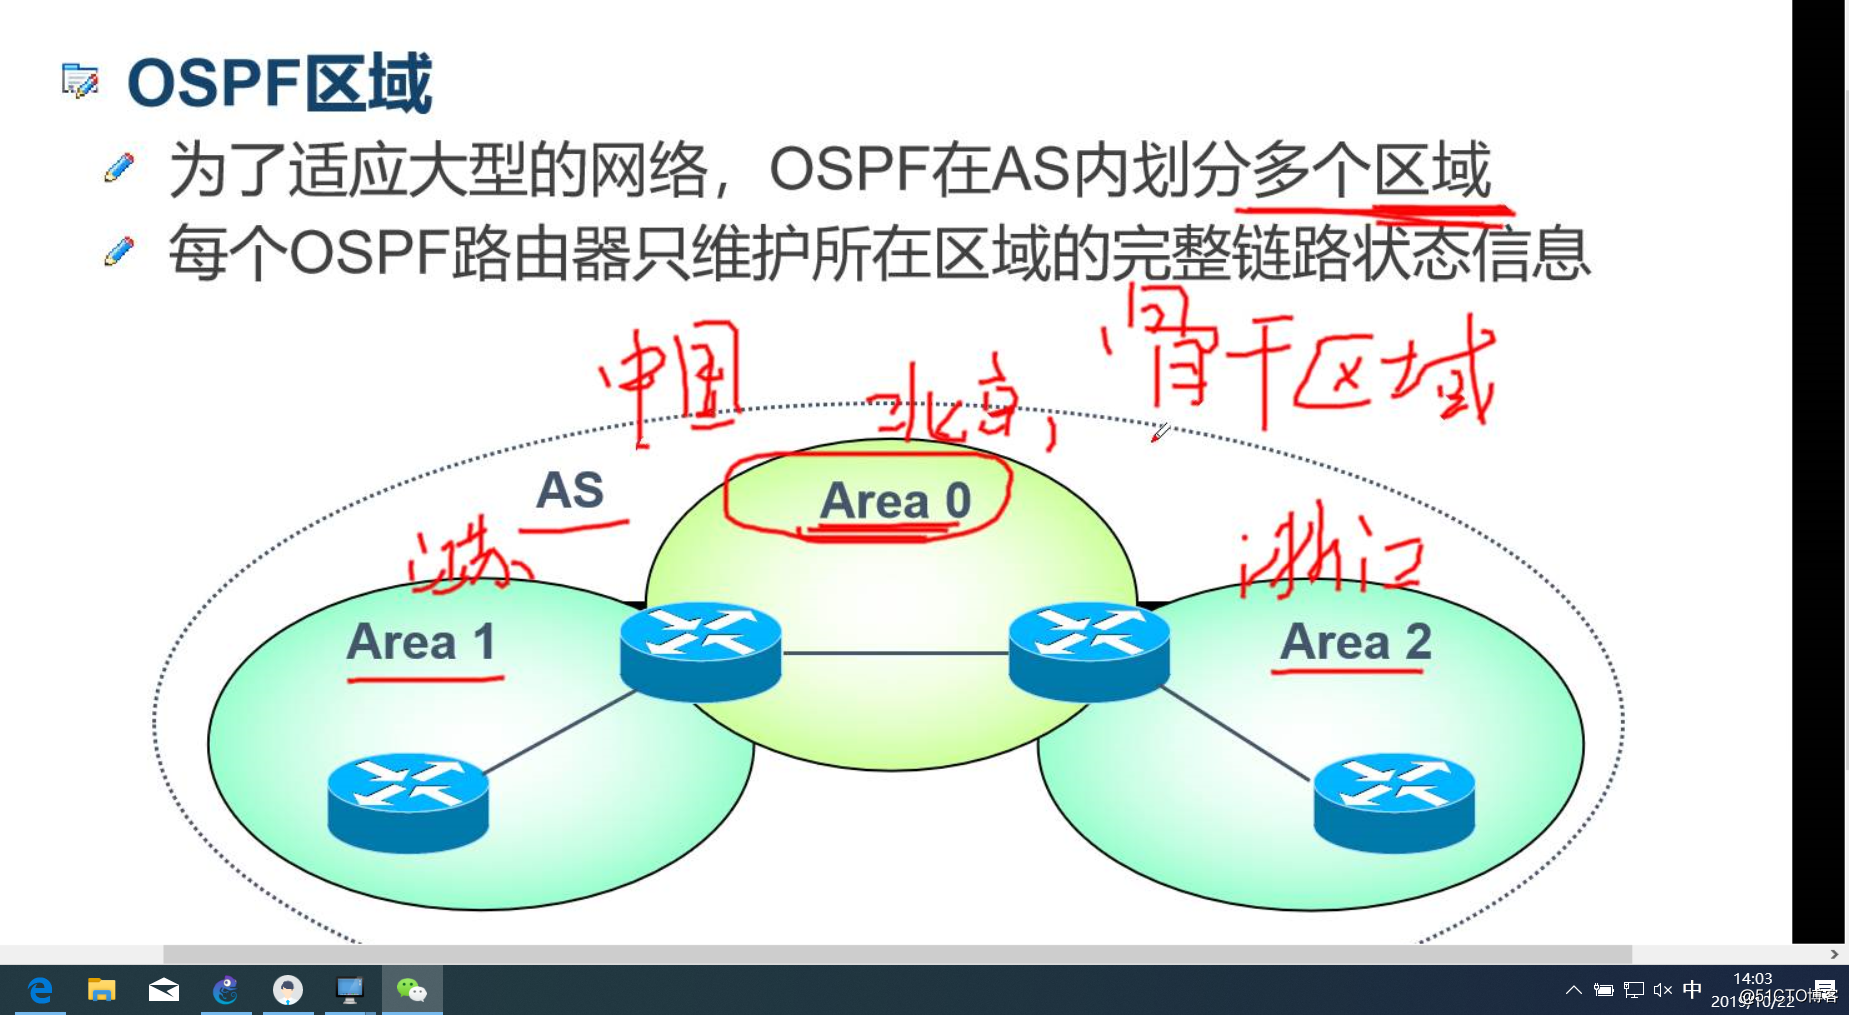 *动态路由--OSPF路由协议*简述